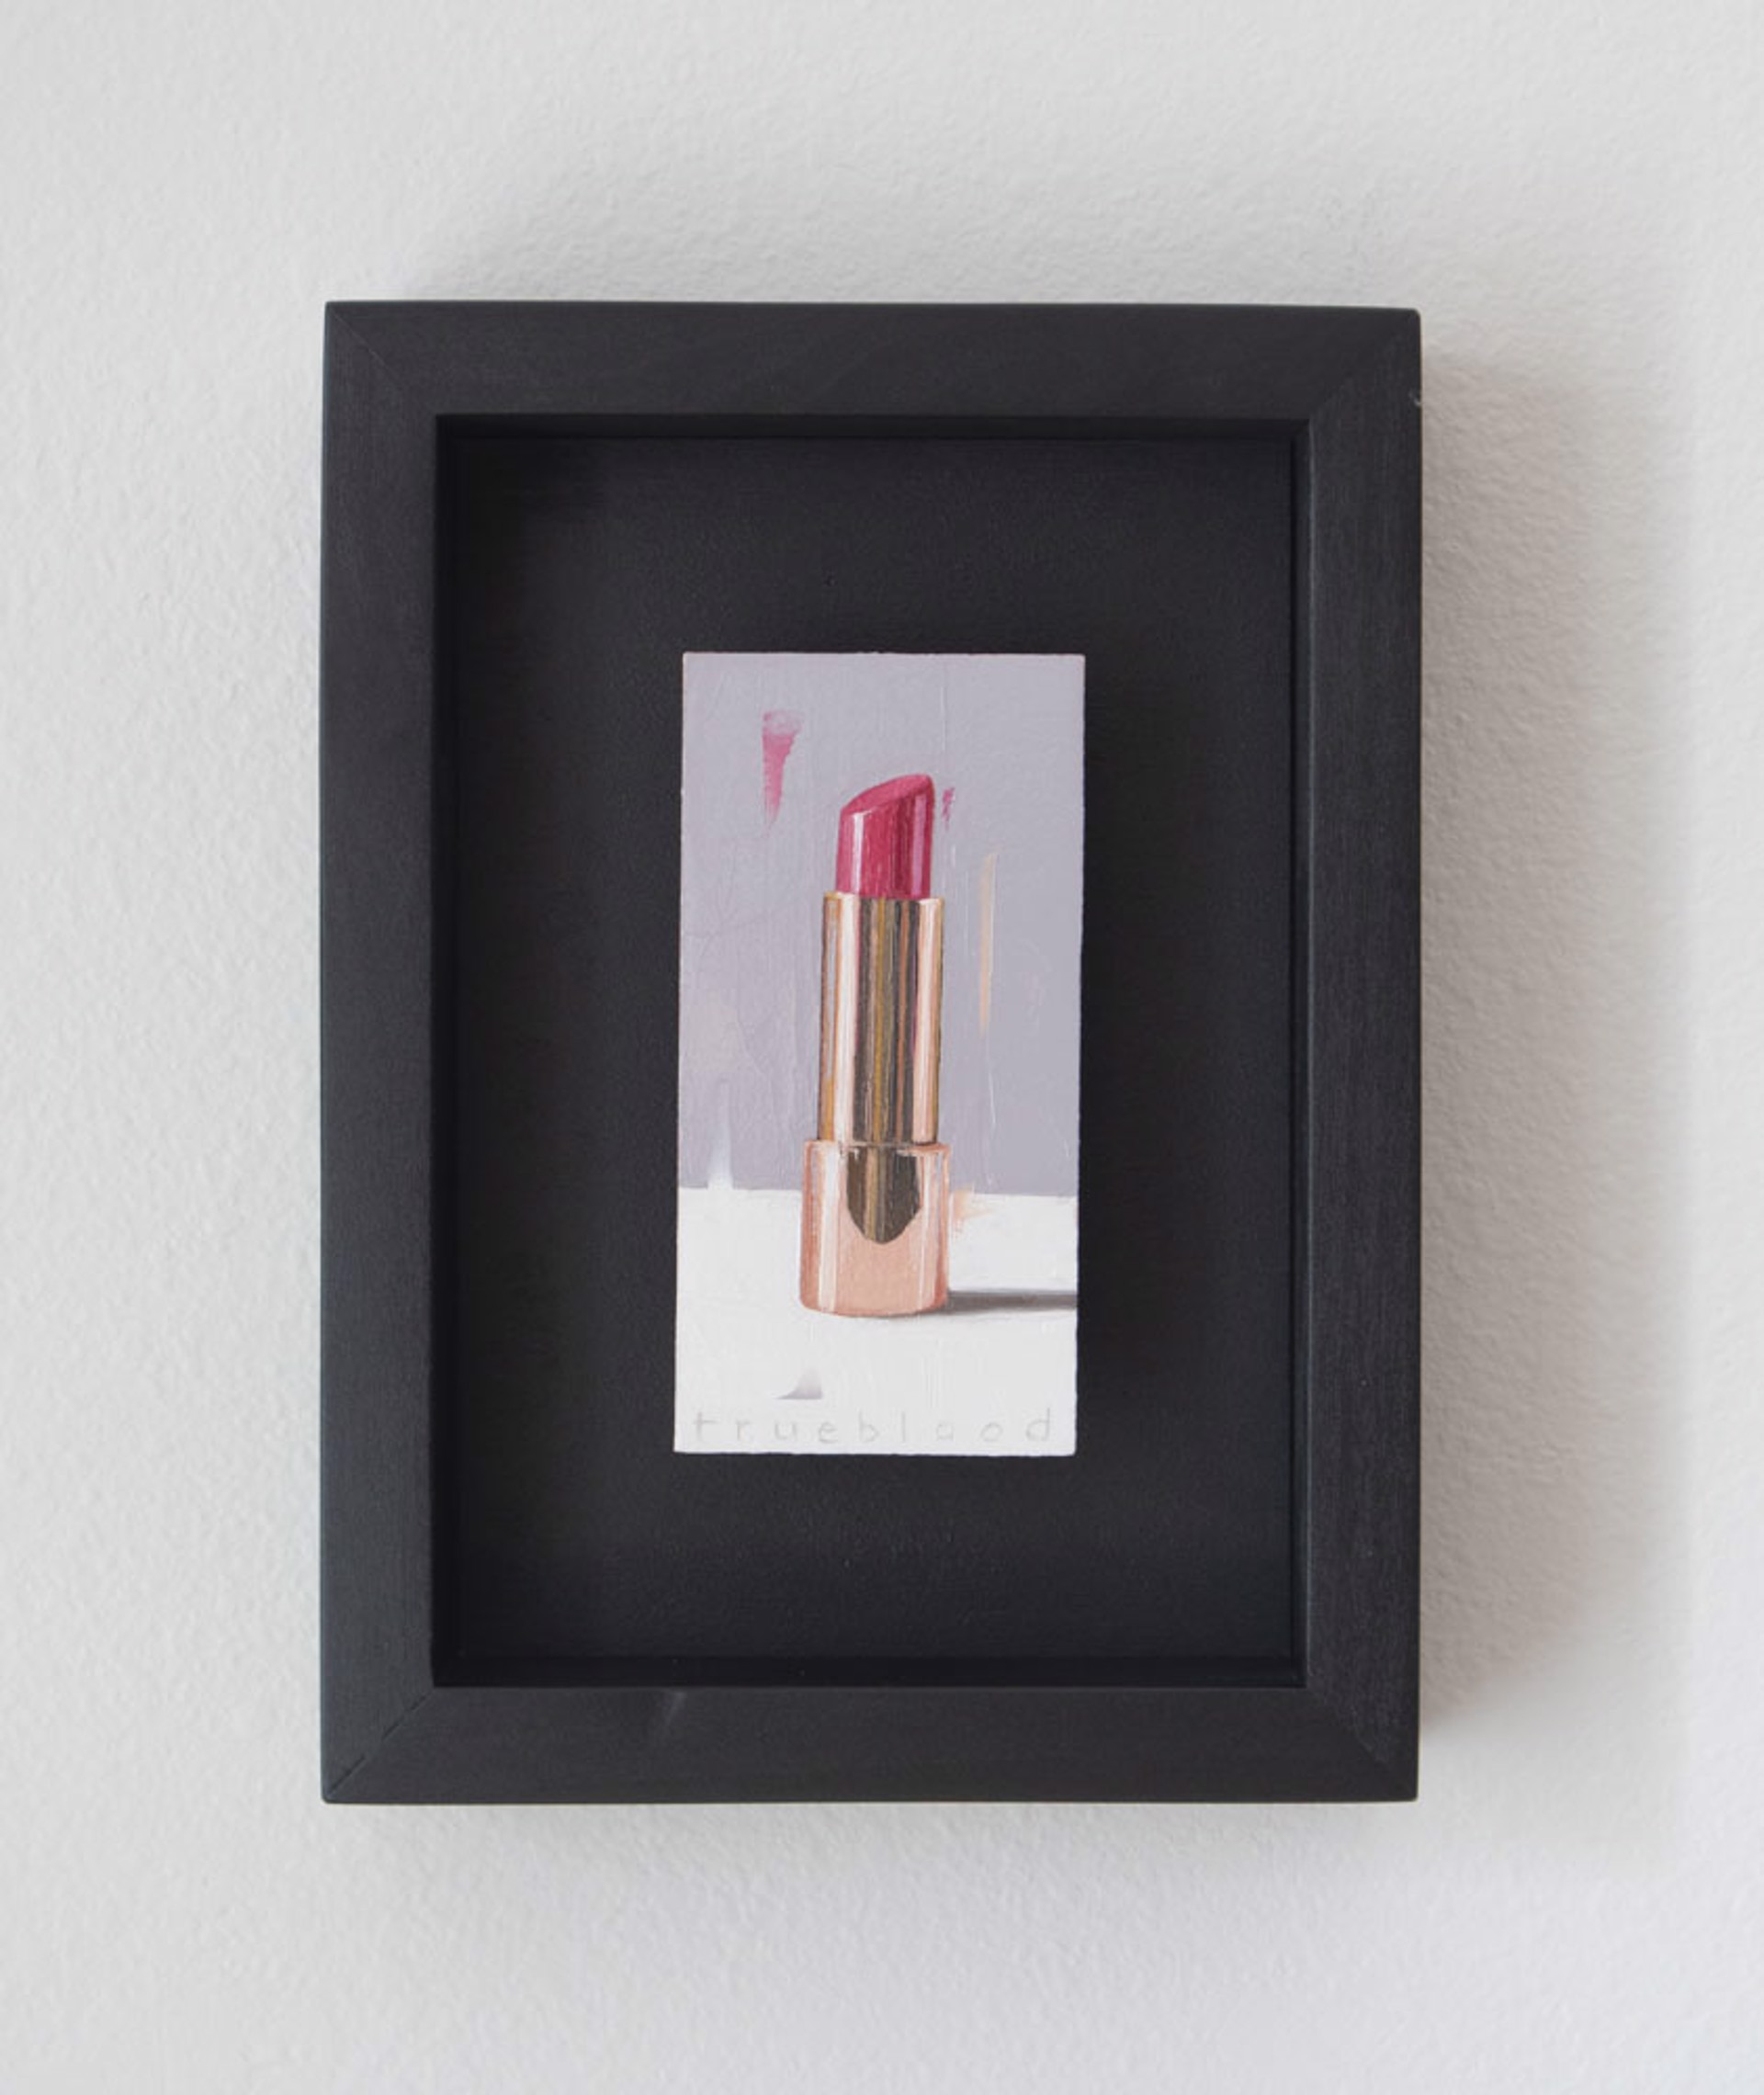 Hot Pink Lipstick by Megan Trueblood